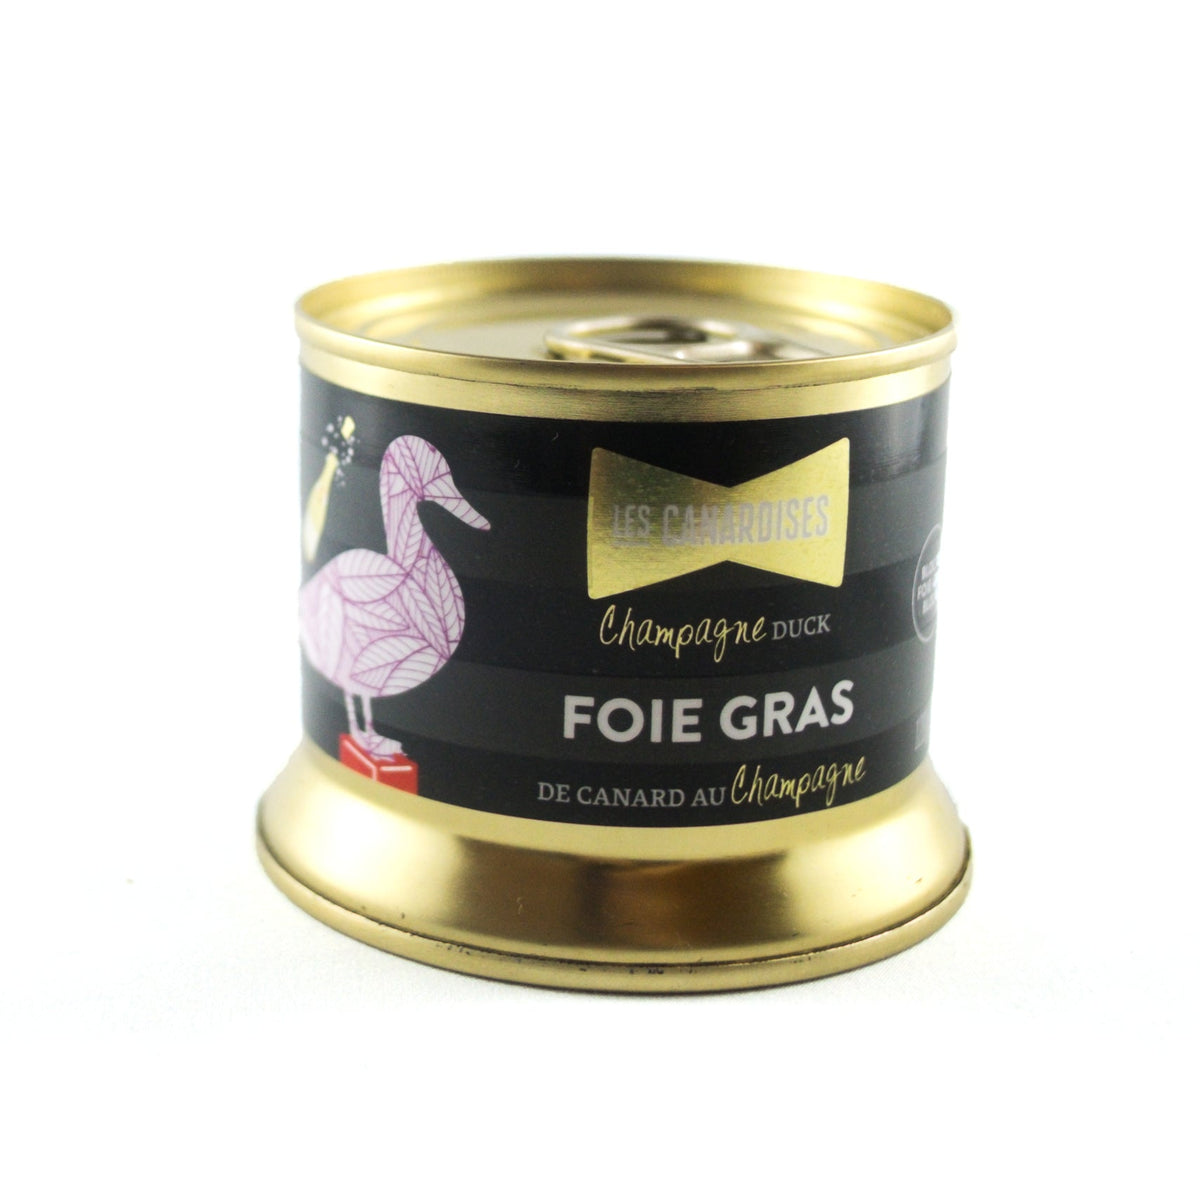 Duck Champagne Foie Gras (block) 140g